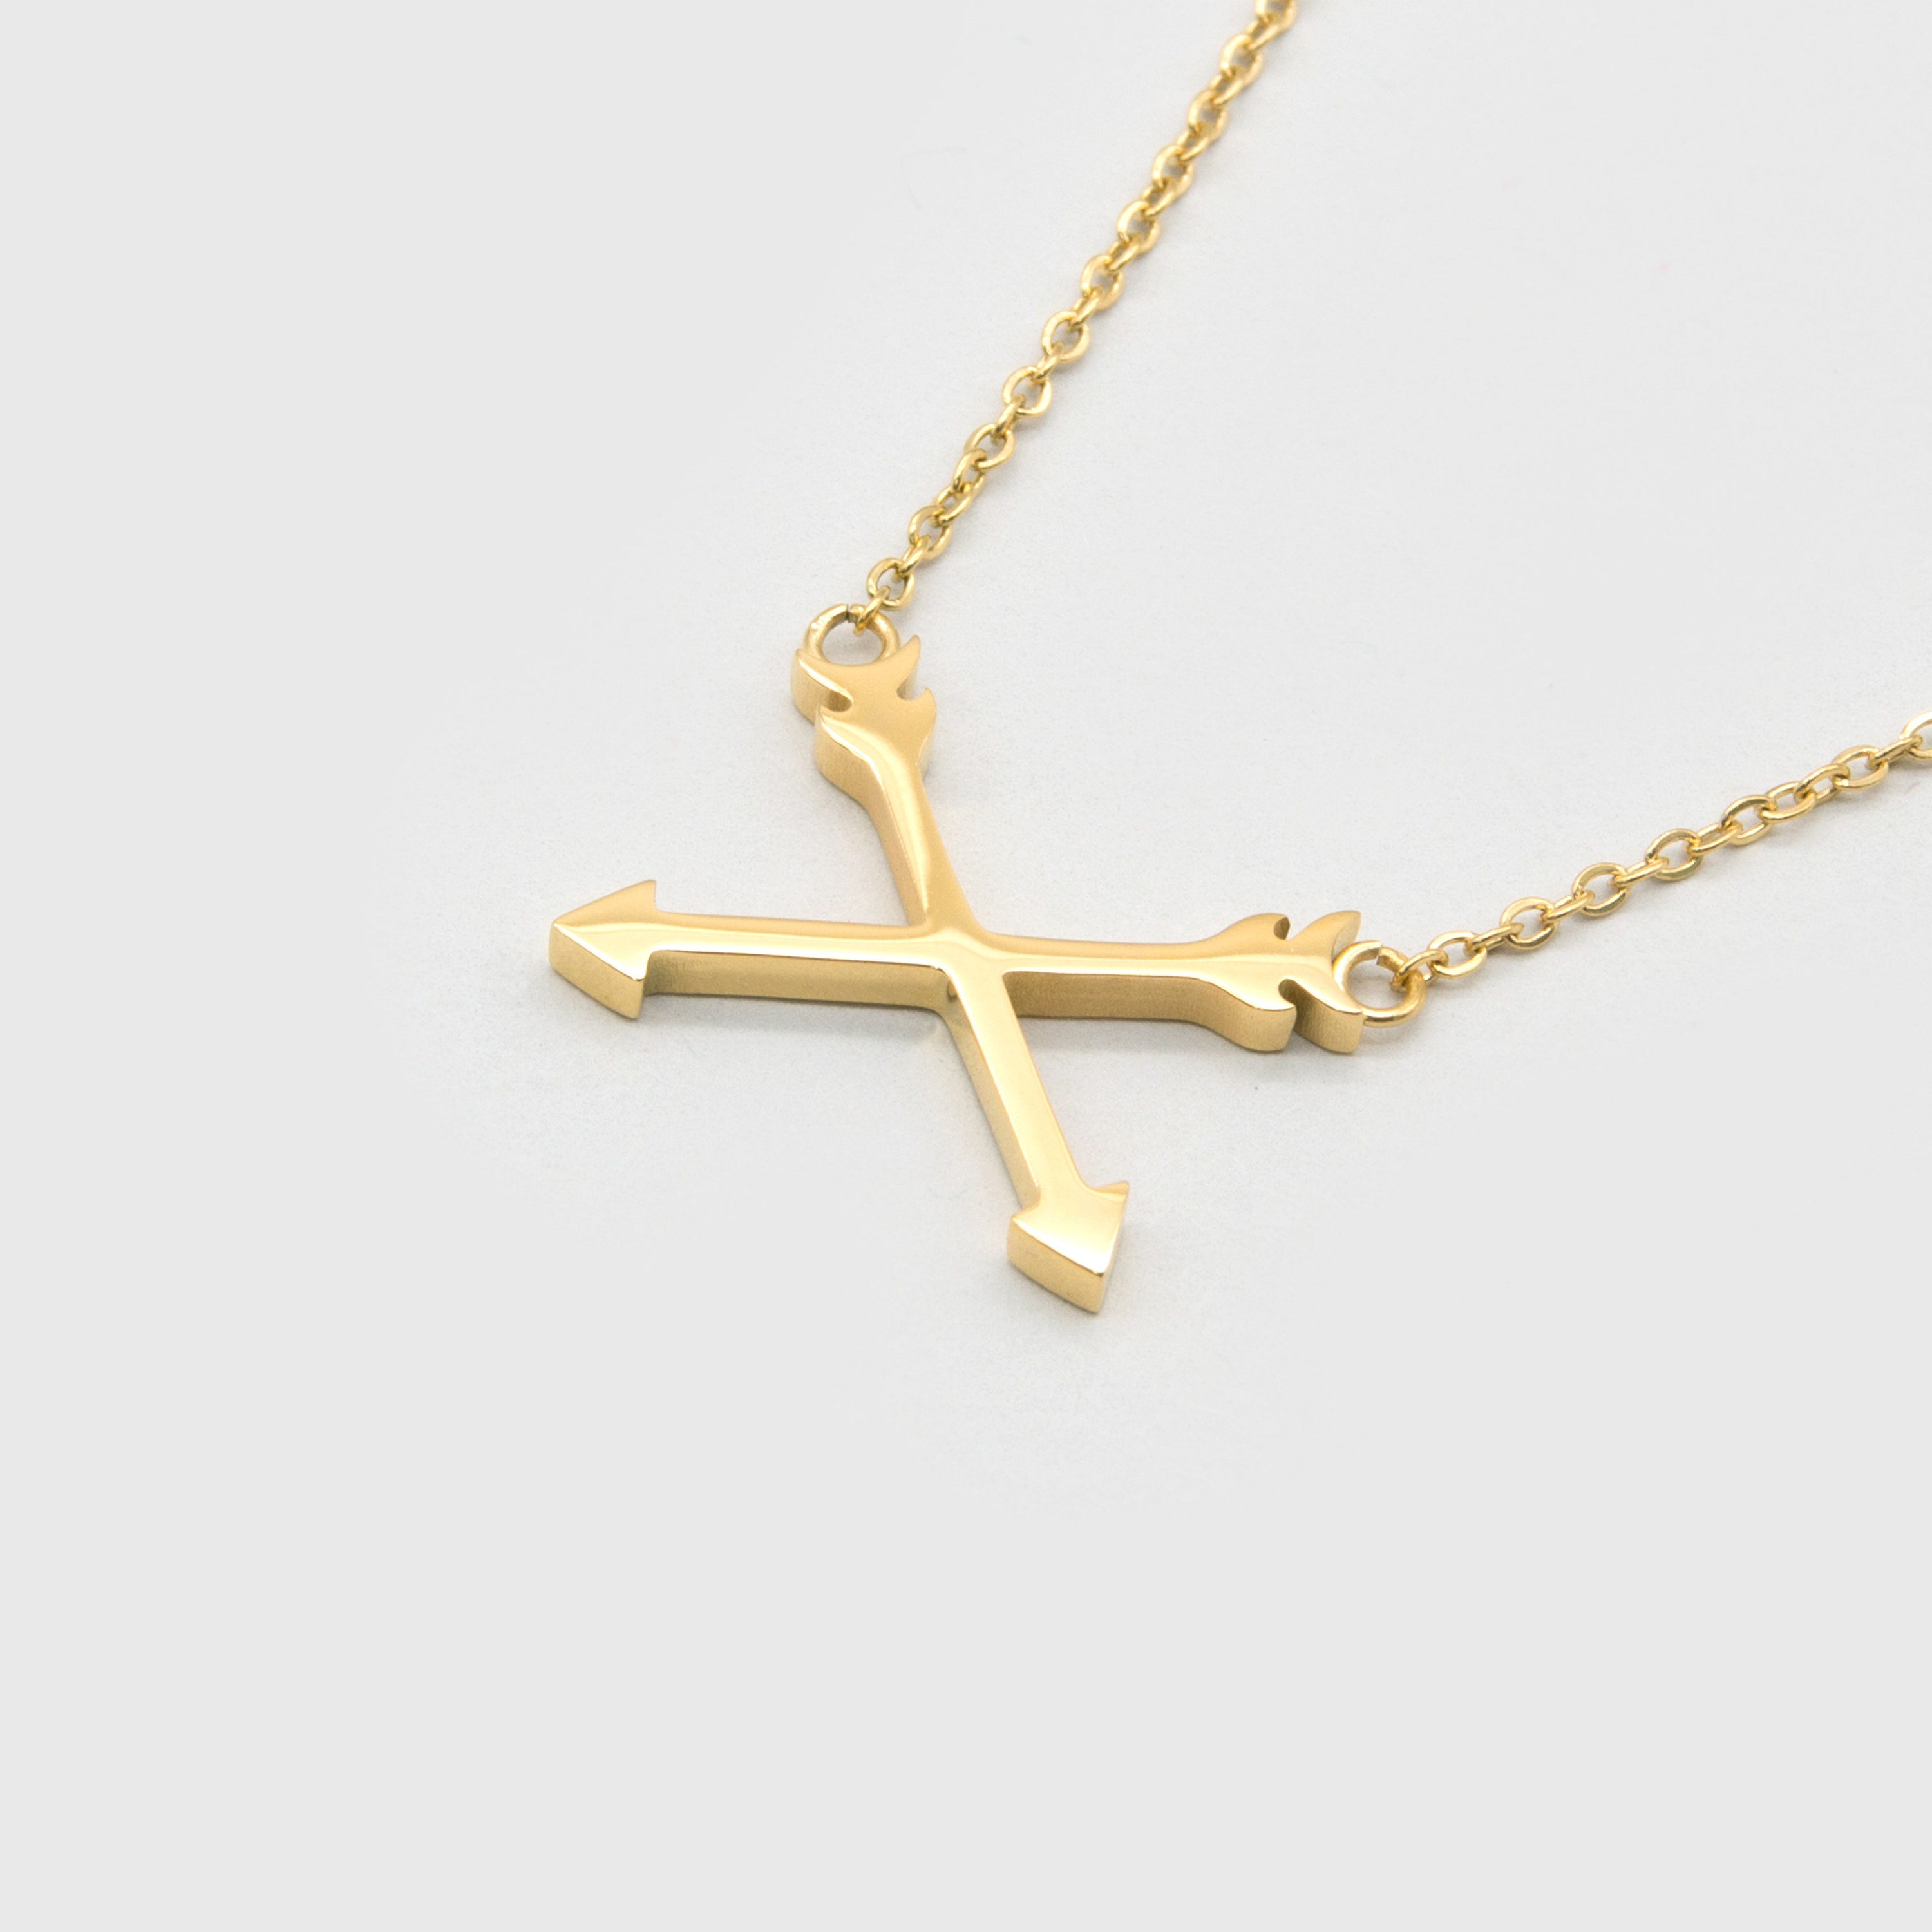 Kuku gold arrow necklace